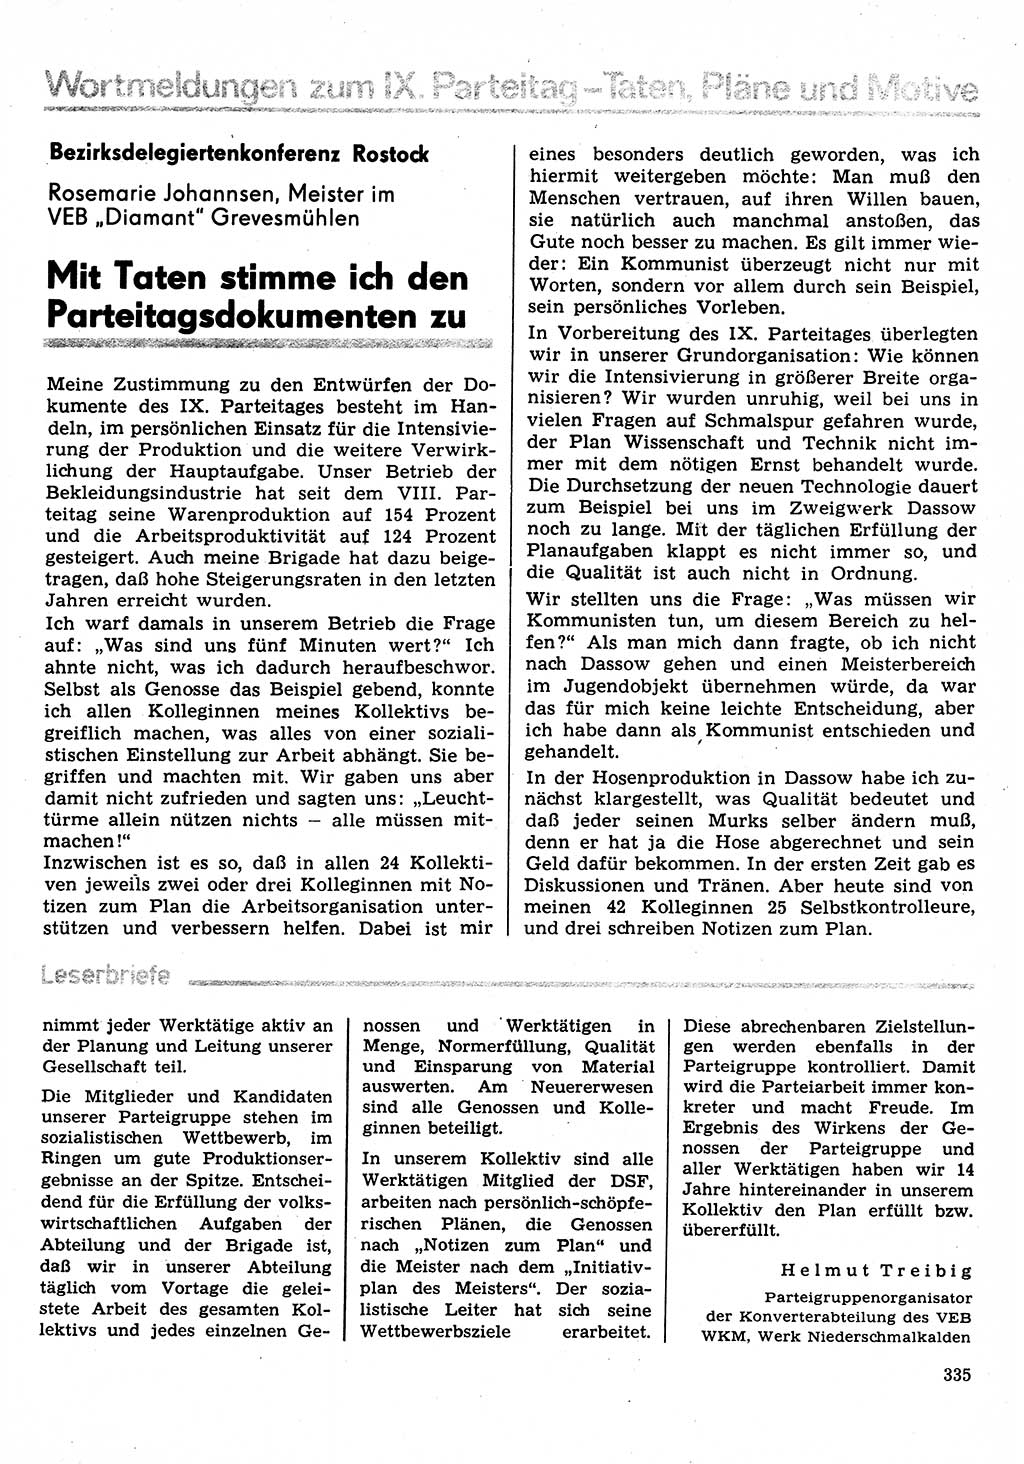 Neuer Weg (NW), Organ des Zentralkomitees (ZK) der SED (Sozialistische Einheitspartei Deutschlands) für Fragen des Parteilebens, 31. Jahrgang [Deutsche Demokratische Republik (DDR)] 1976, Seite 335 (NW ZK SED DDR 1976, S. 335)